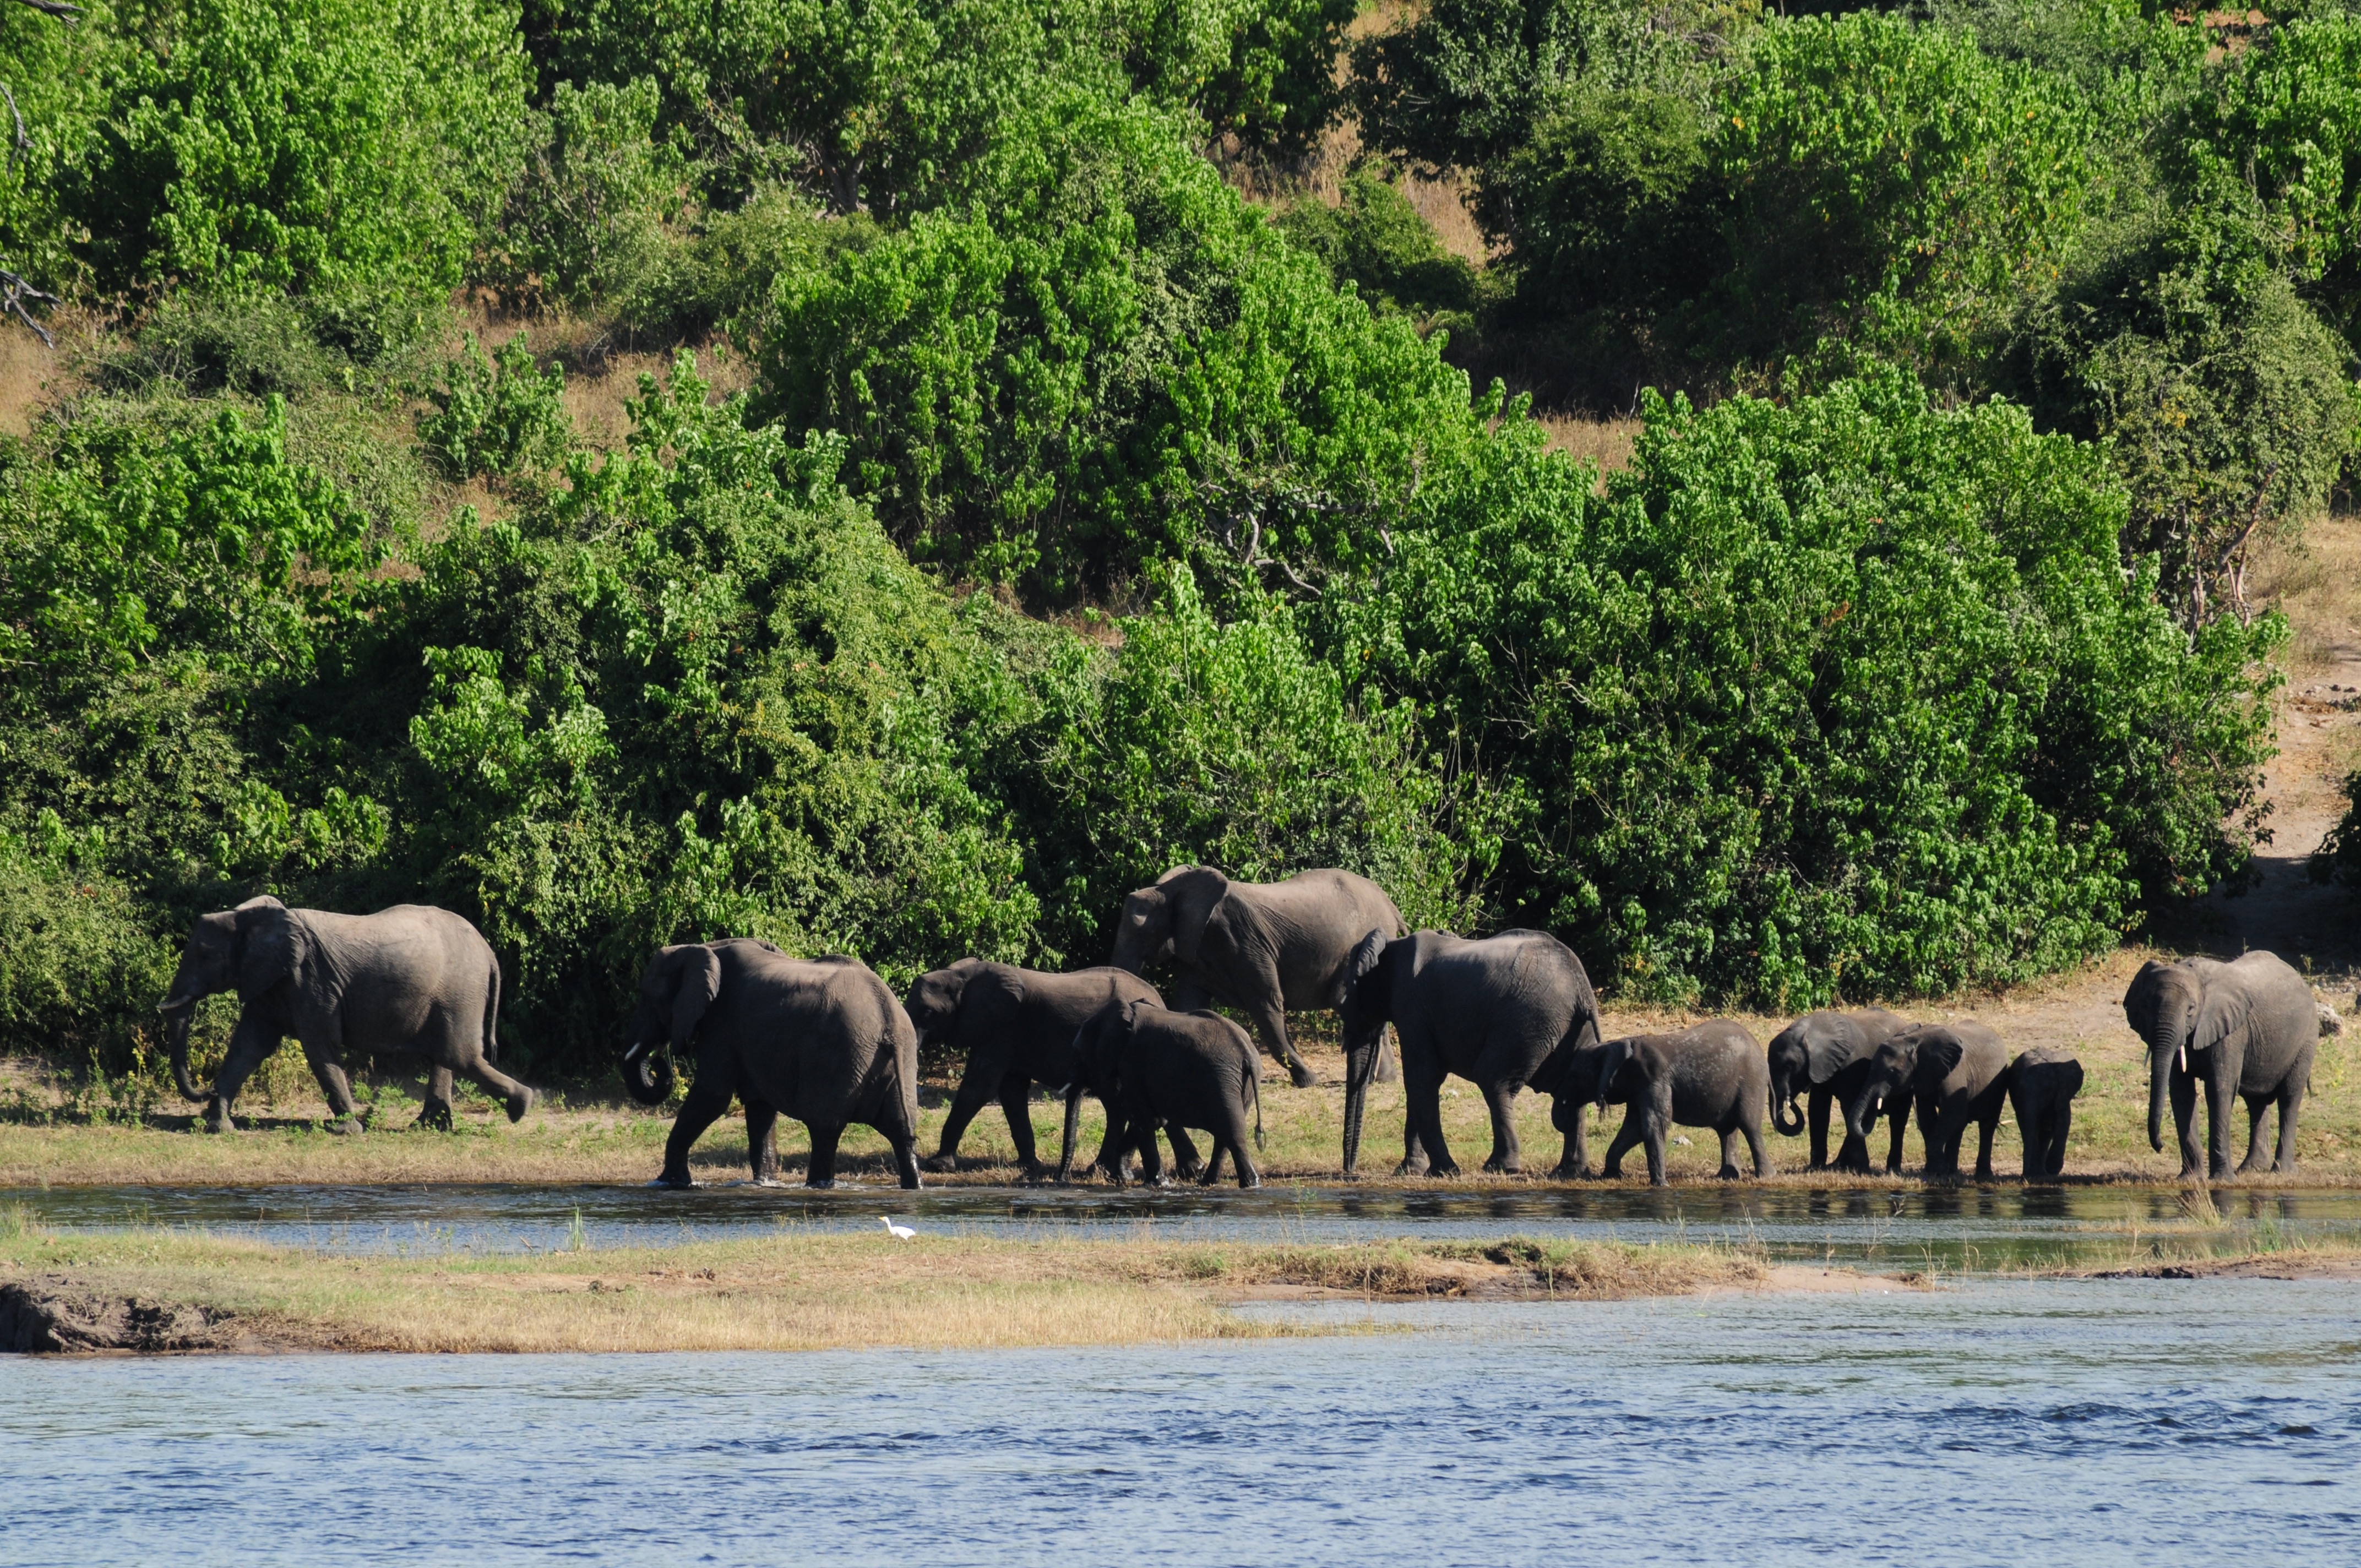 Elephants on the banks